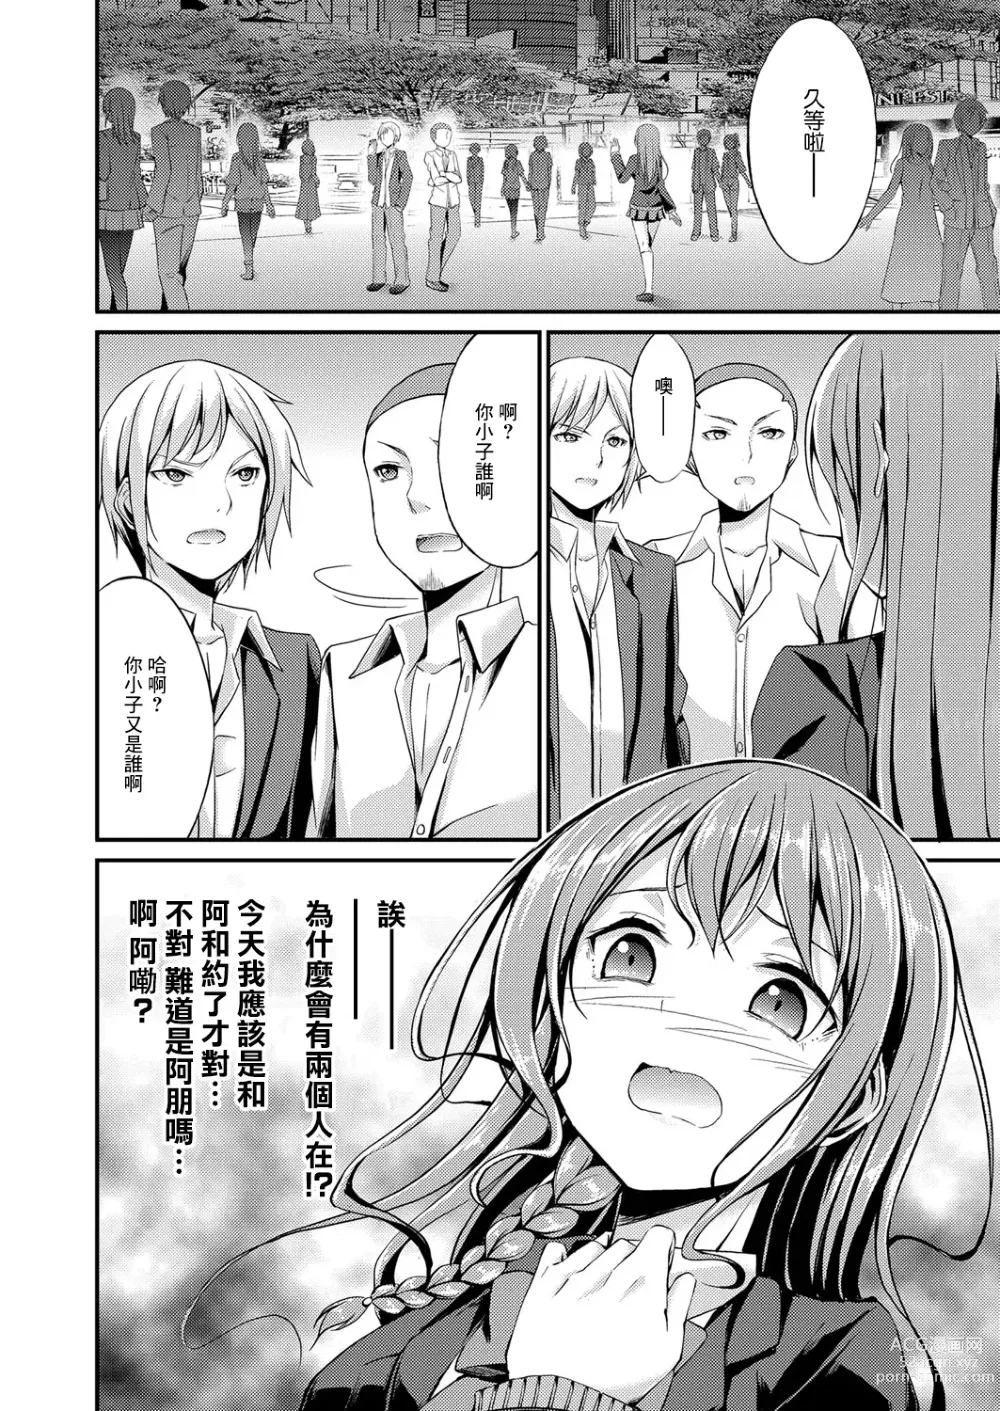 Page 4 of manga Himitsu no Asobi